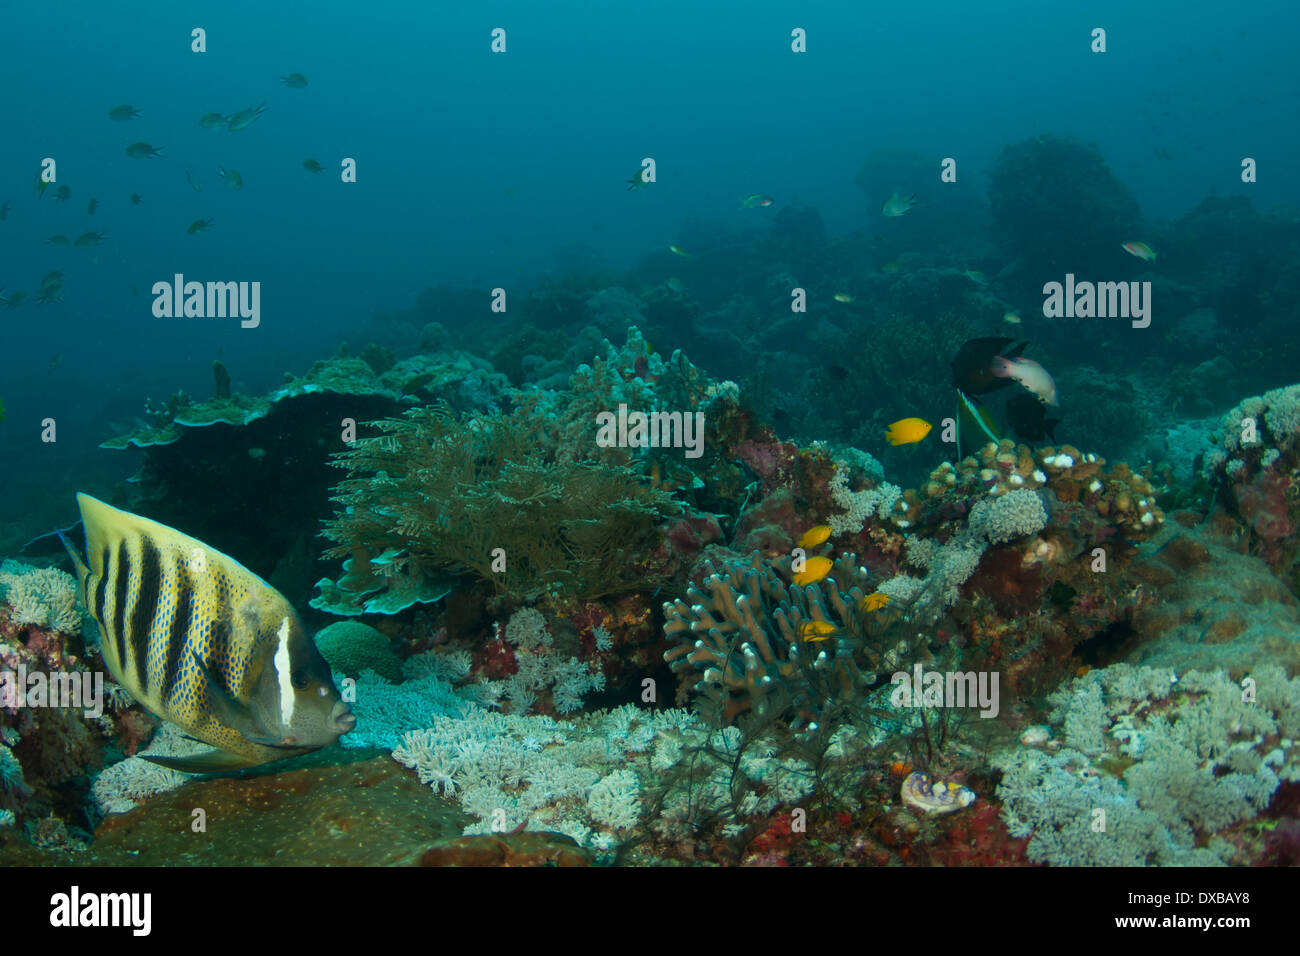 Mbpaimuk Reef dive site, Tanjung Island, Raja Ampat, Indonesia Stock Photo